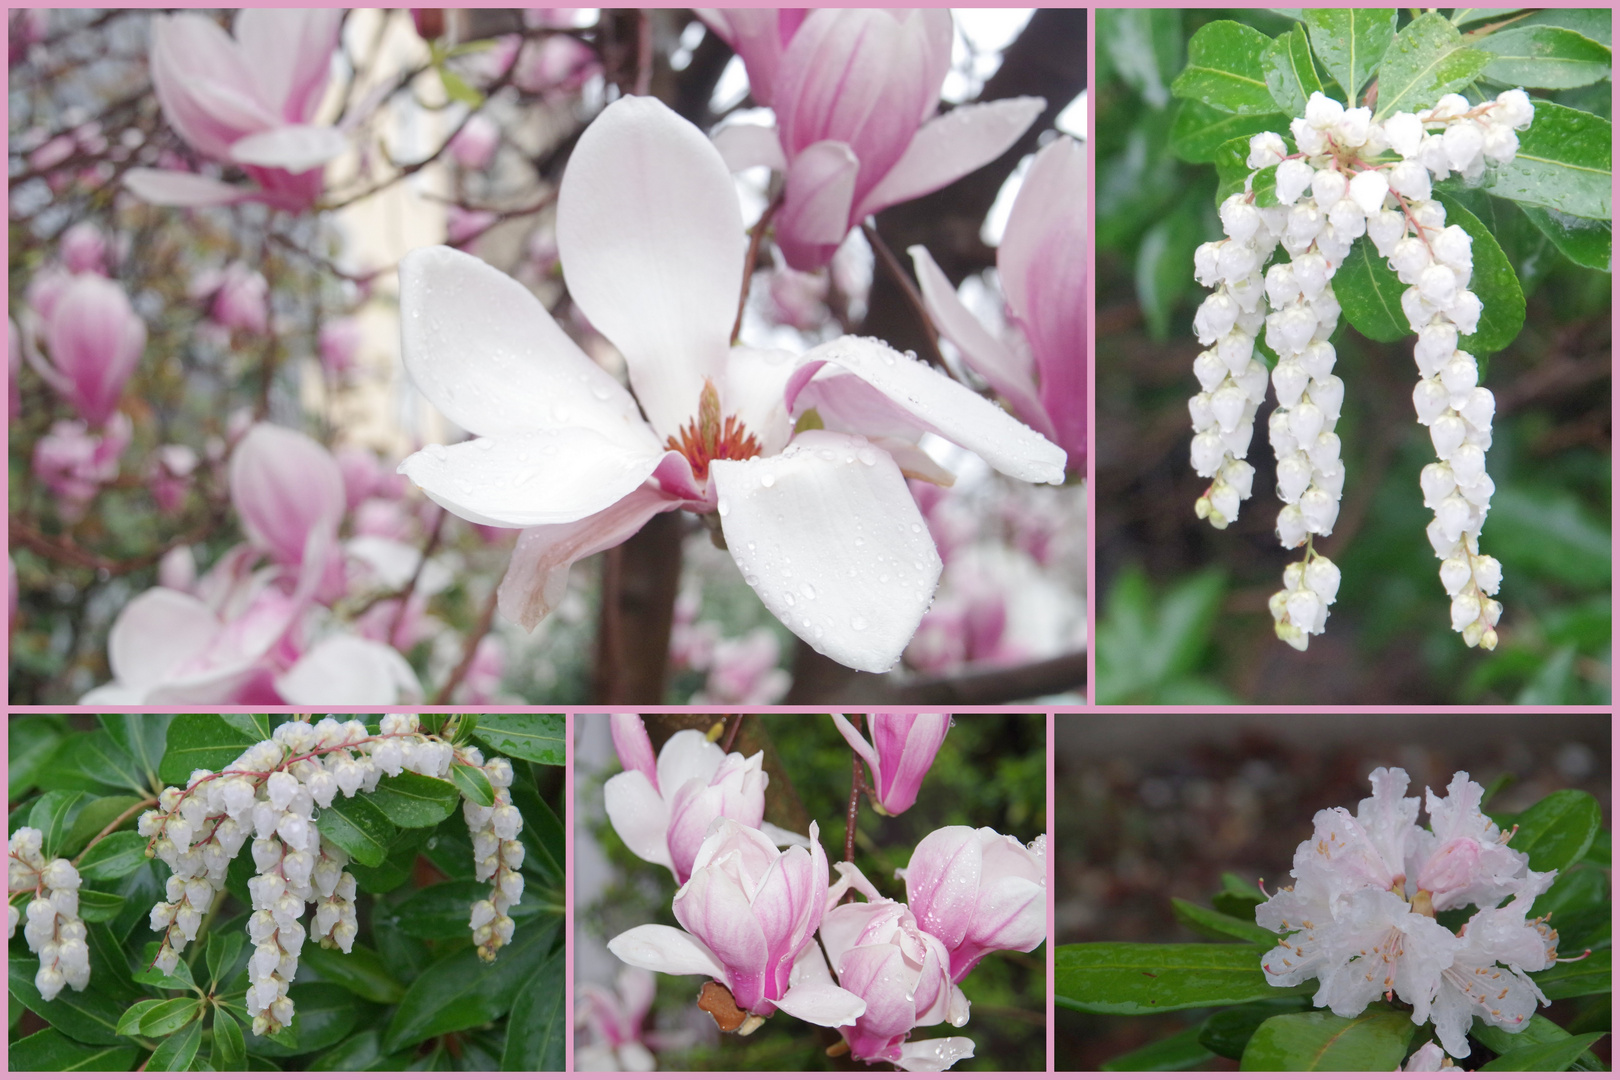 Frühlings-Collage